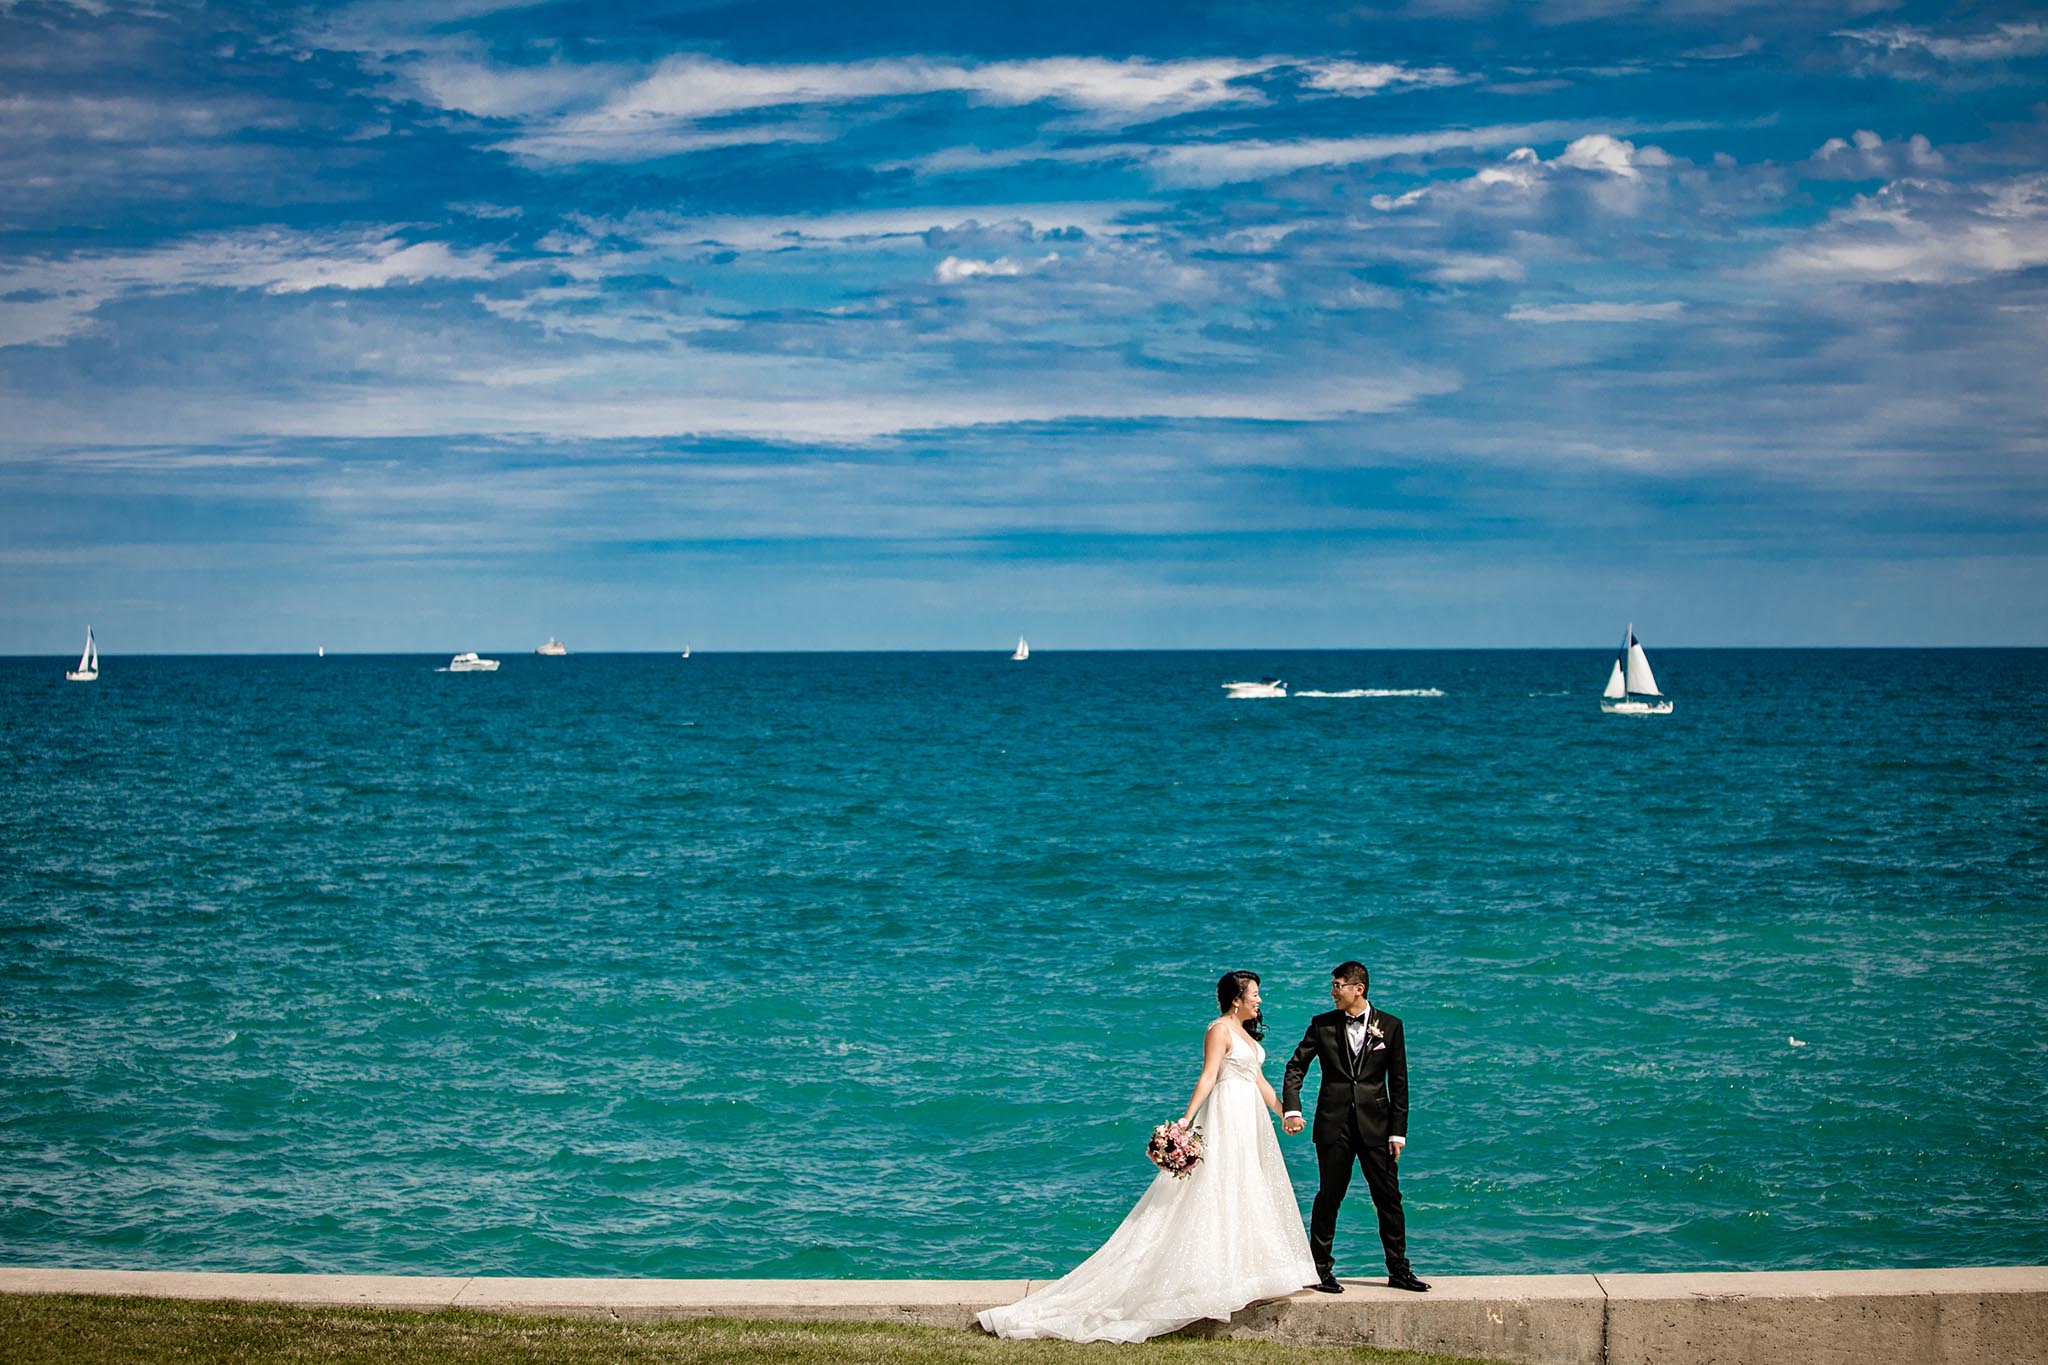 Lake Forest wedding photographer - Illinois